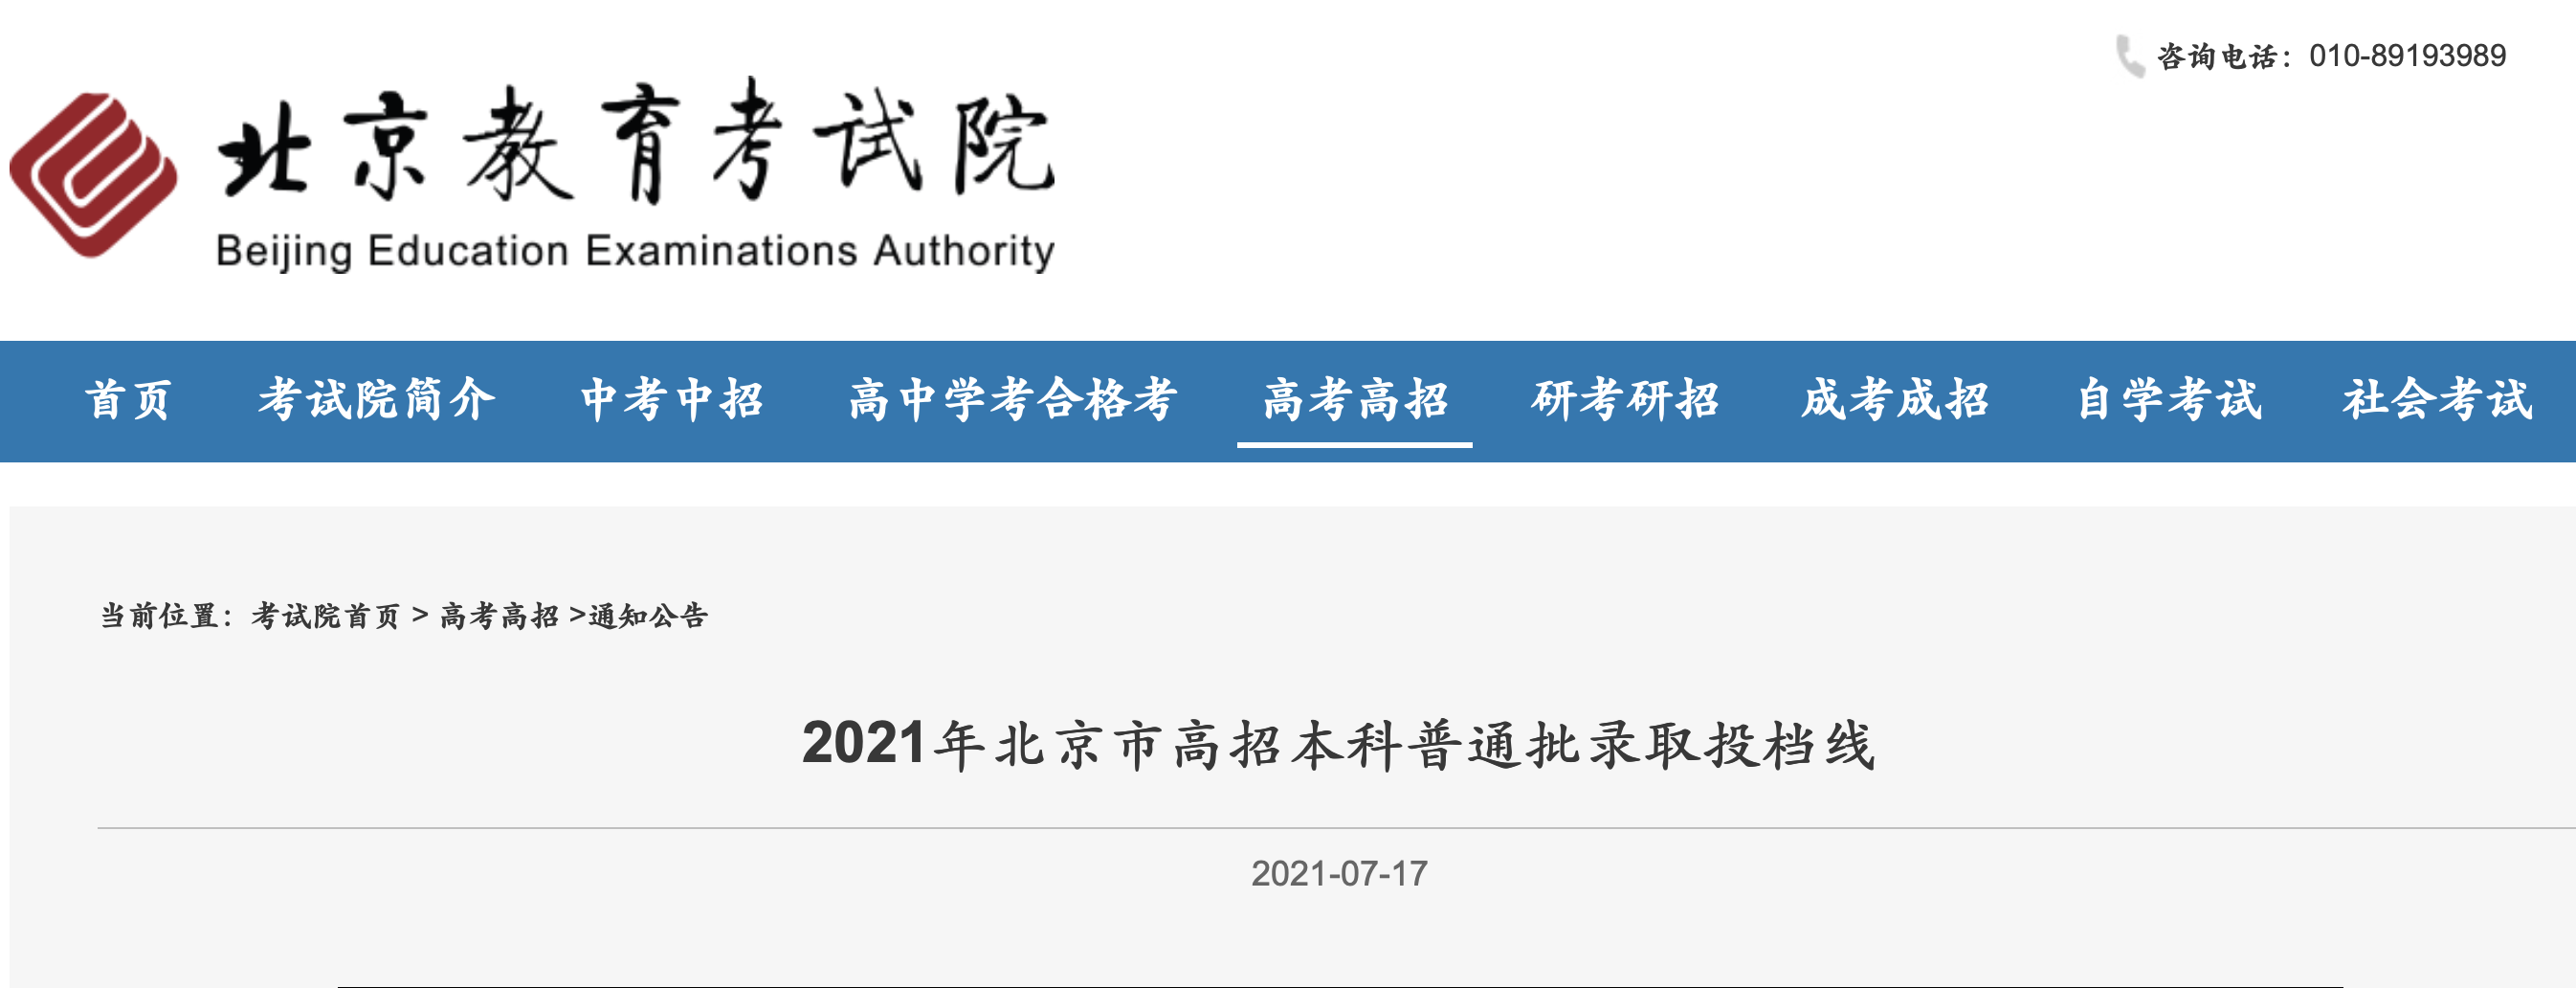 2021年北京市高招本科普通批录取投档线